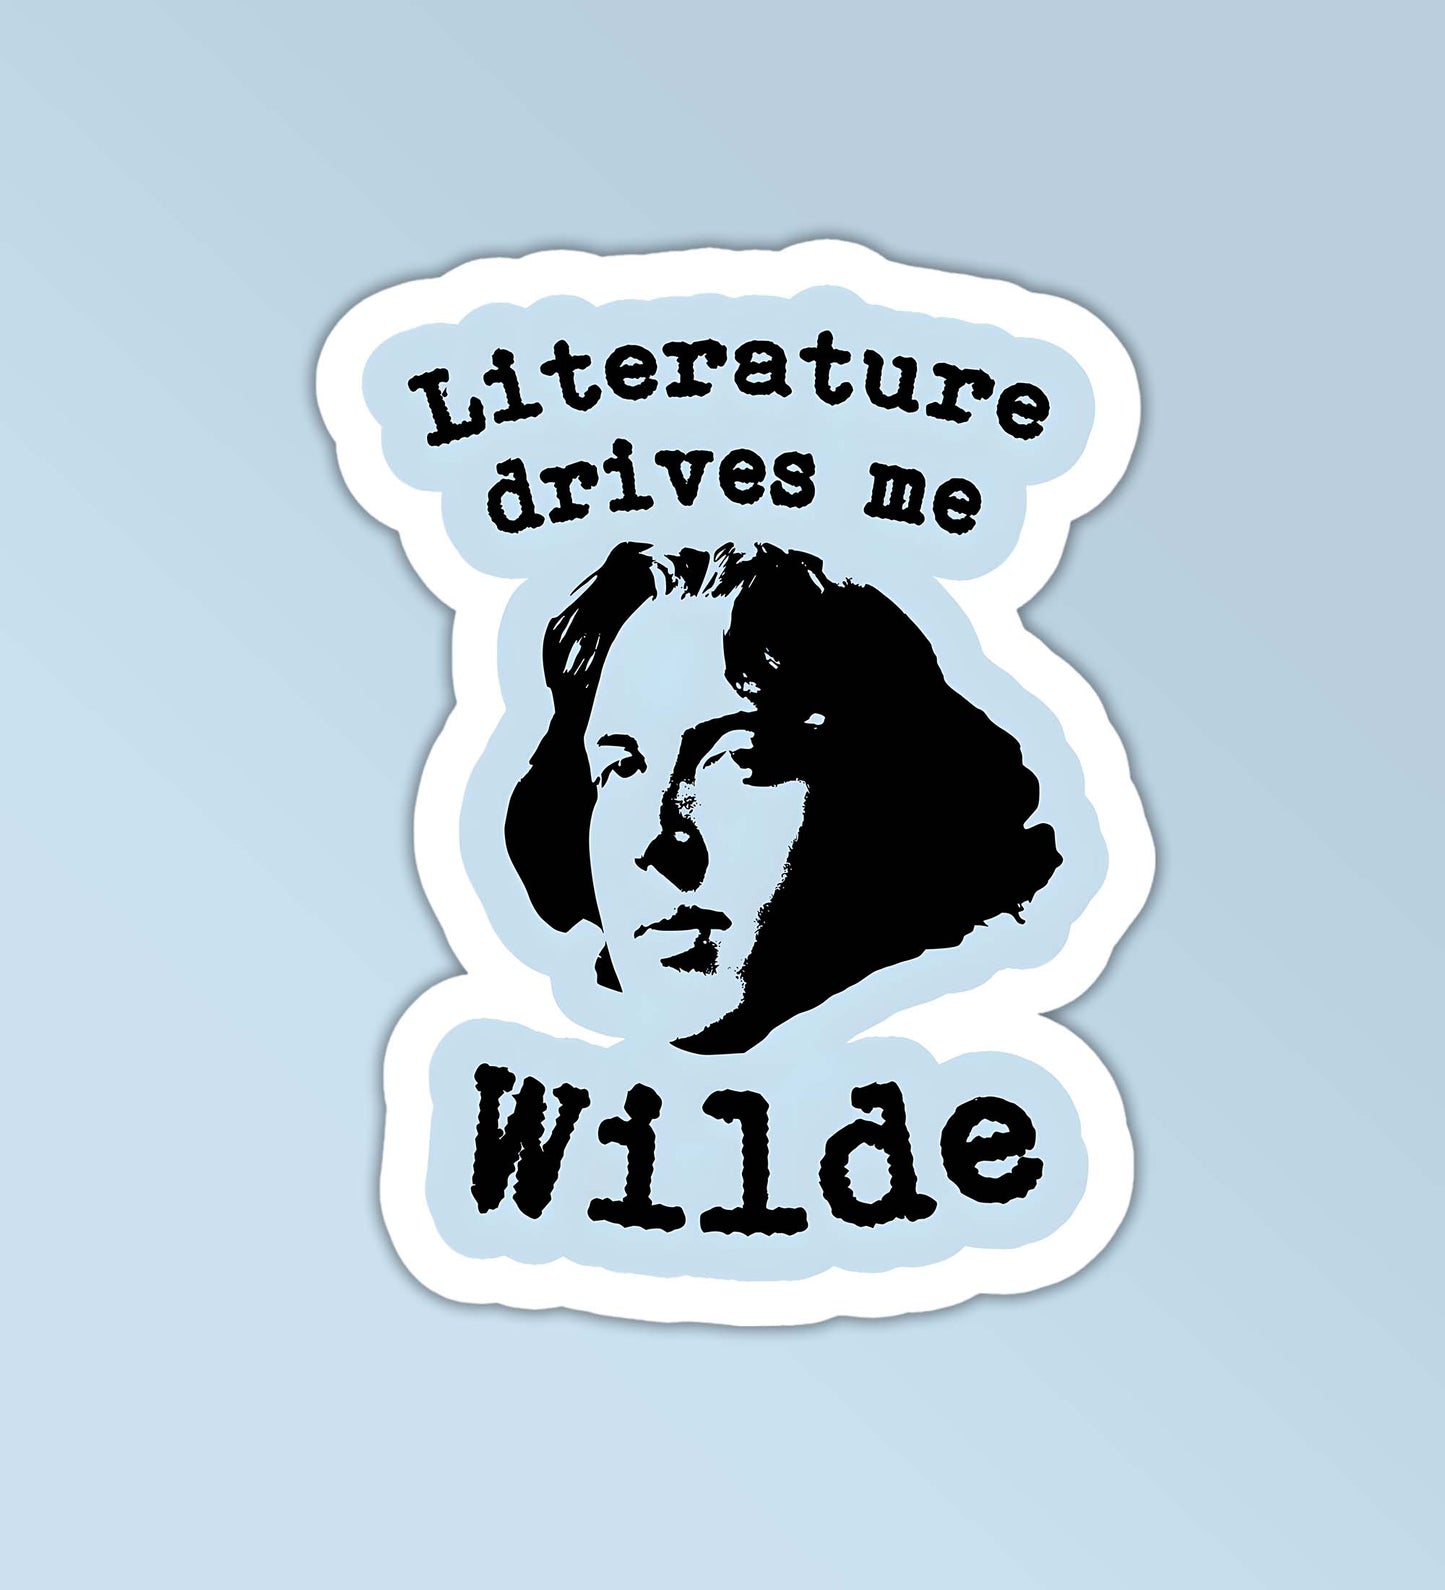 Literature Drive Me Wilde